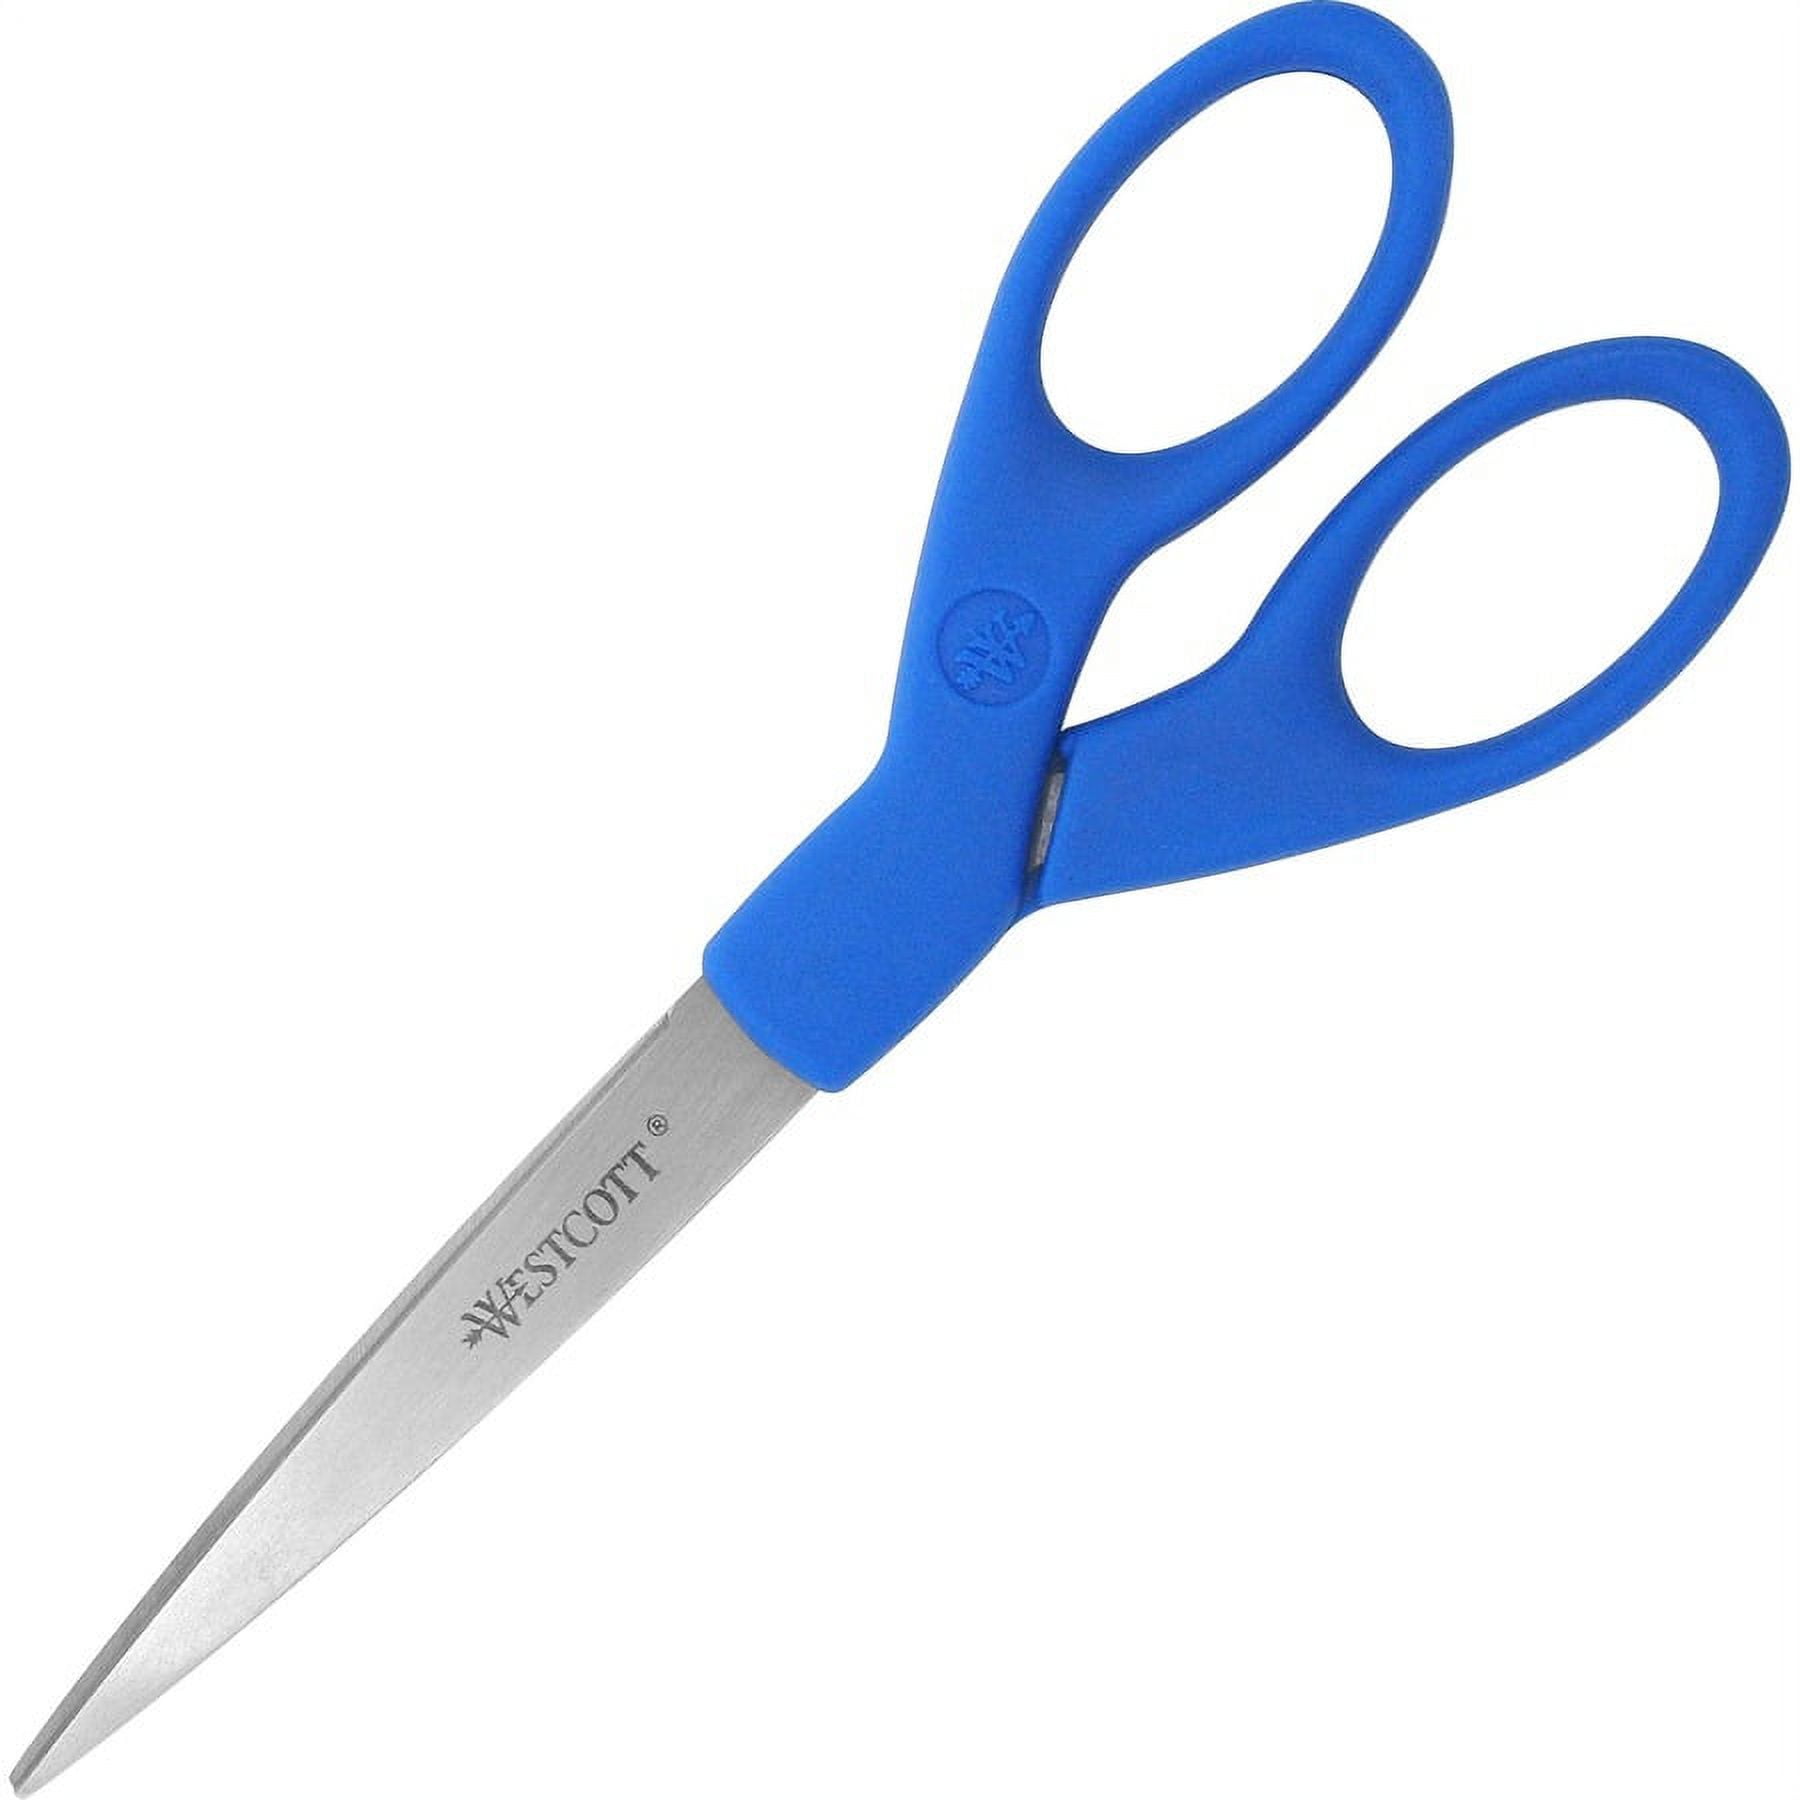 Westcott - Westcott 6 inch Paper Edger Scissors, 2pk (Majestic/Pinking)